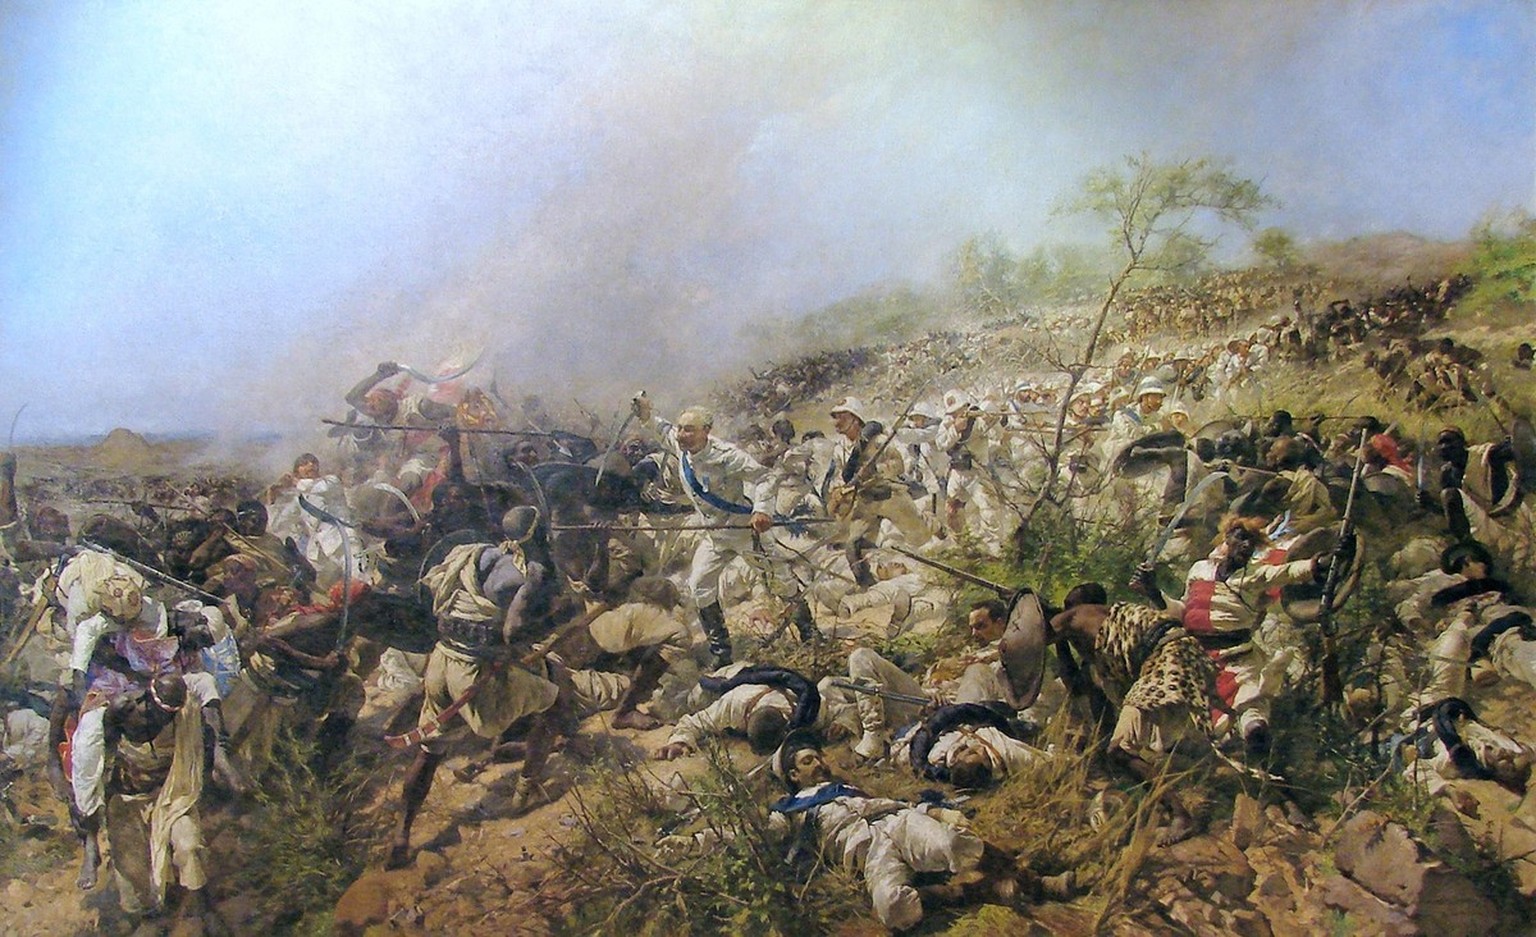 Die Schlacht bei Dogali von Michele Cammarano, 1896.
https://upload.wikimedia.org/wikipedia/commons/5/5d/Bataille_de_Dogali.jpg